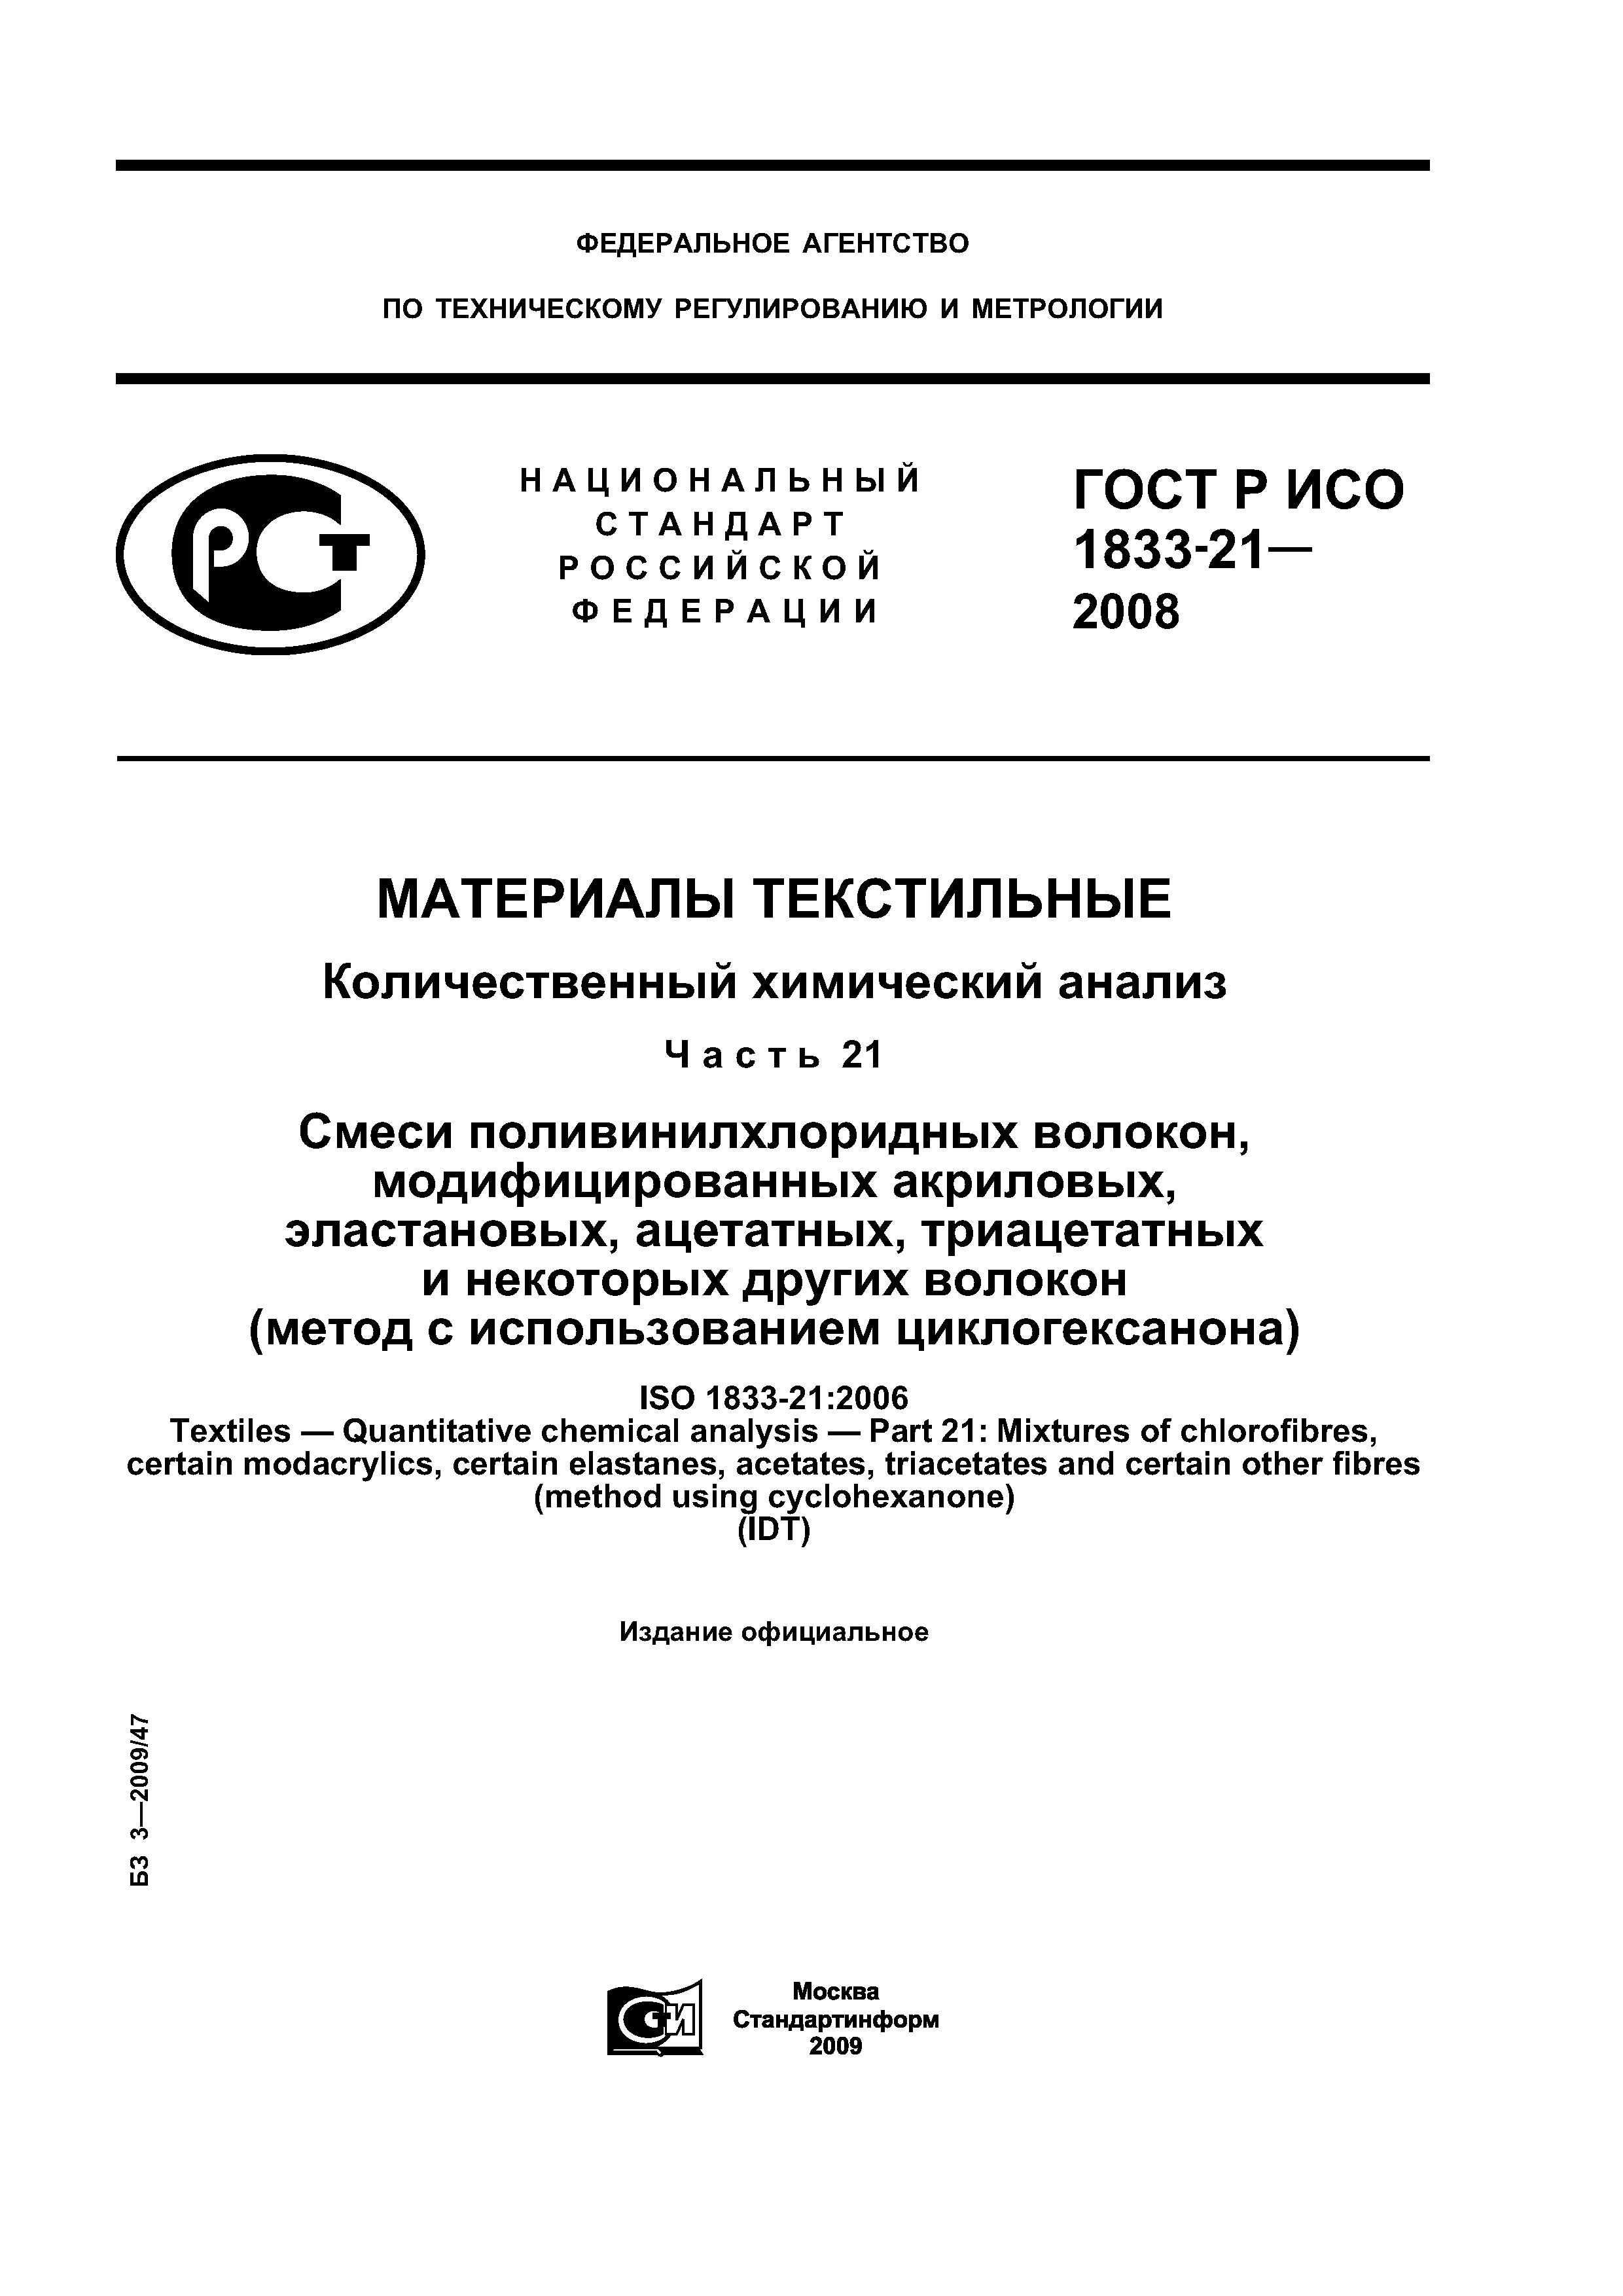 ГОСТ Р ИСО 1833-21-2008